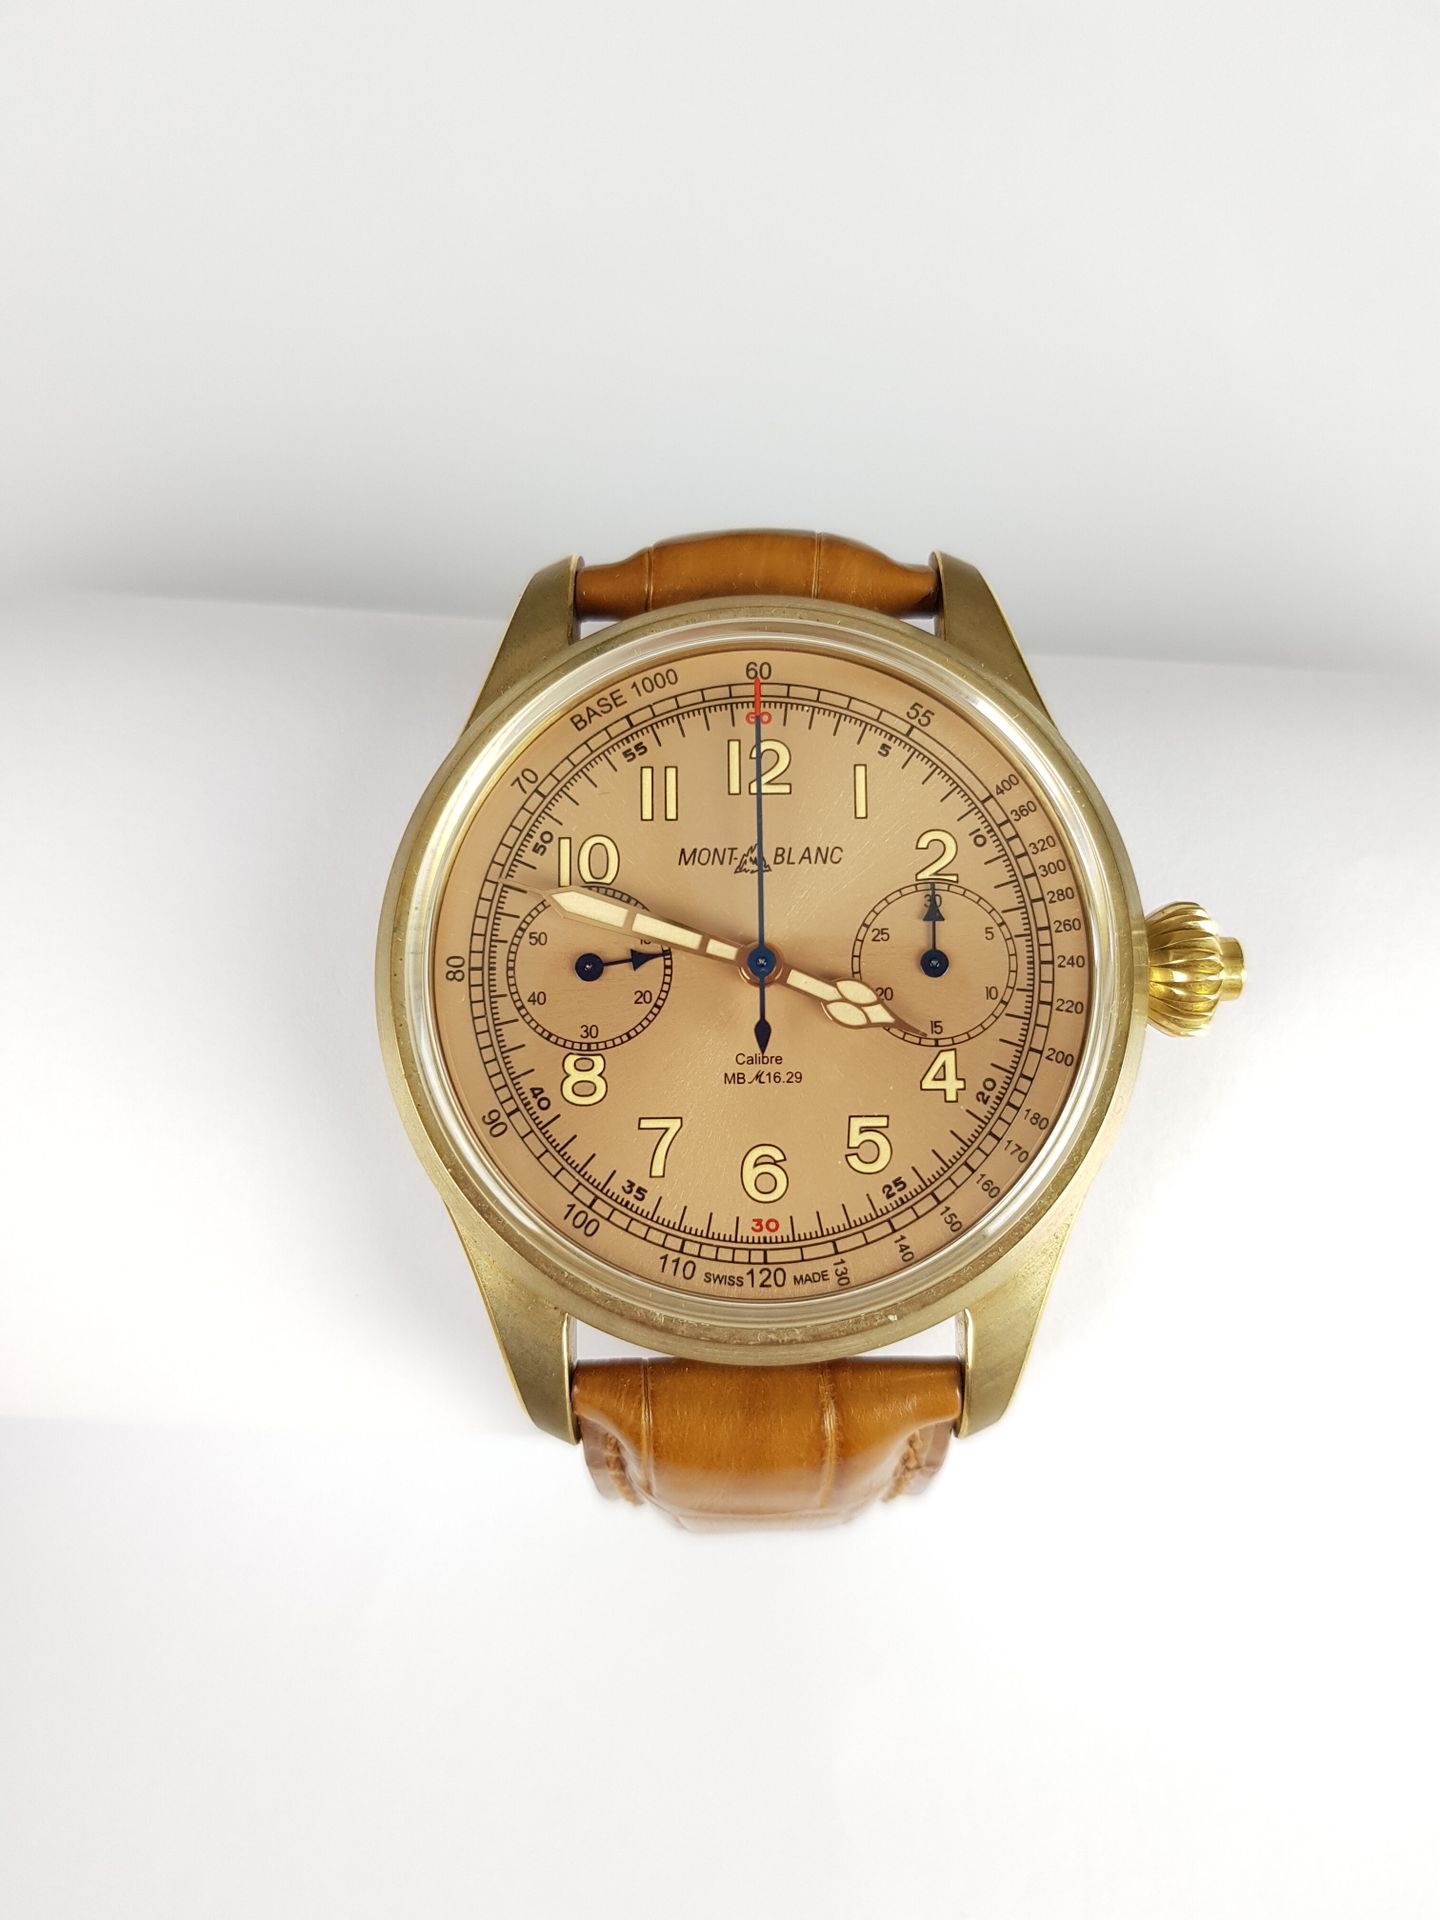 Null Mise à prix : 2 500 €

MONTBLANC

Minerva

Montre chronographe, mono pousso&hellip;